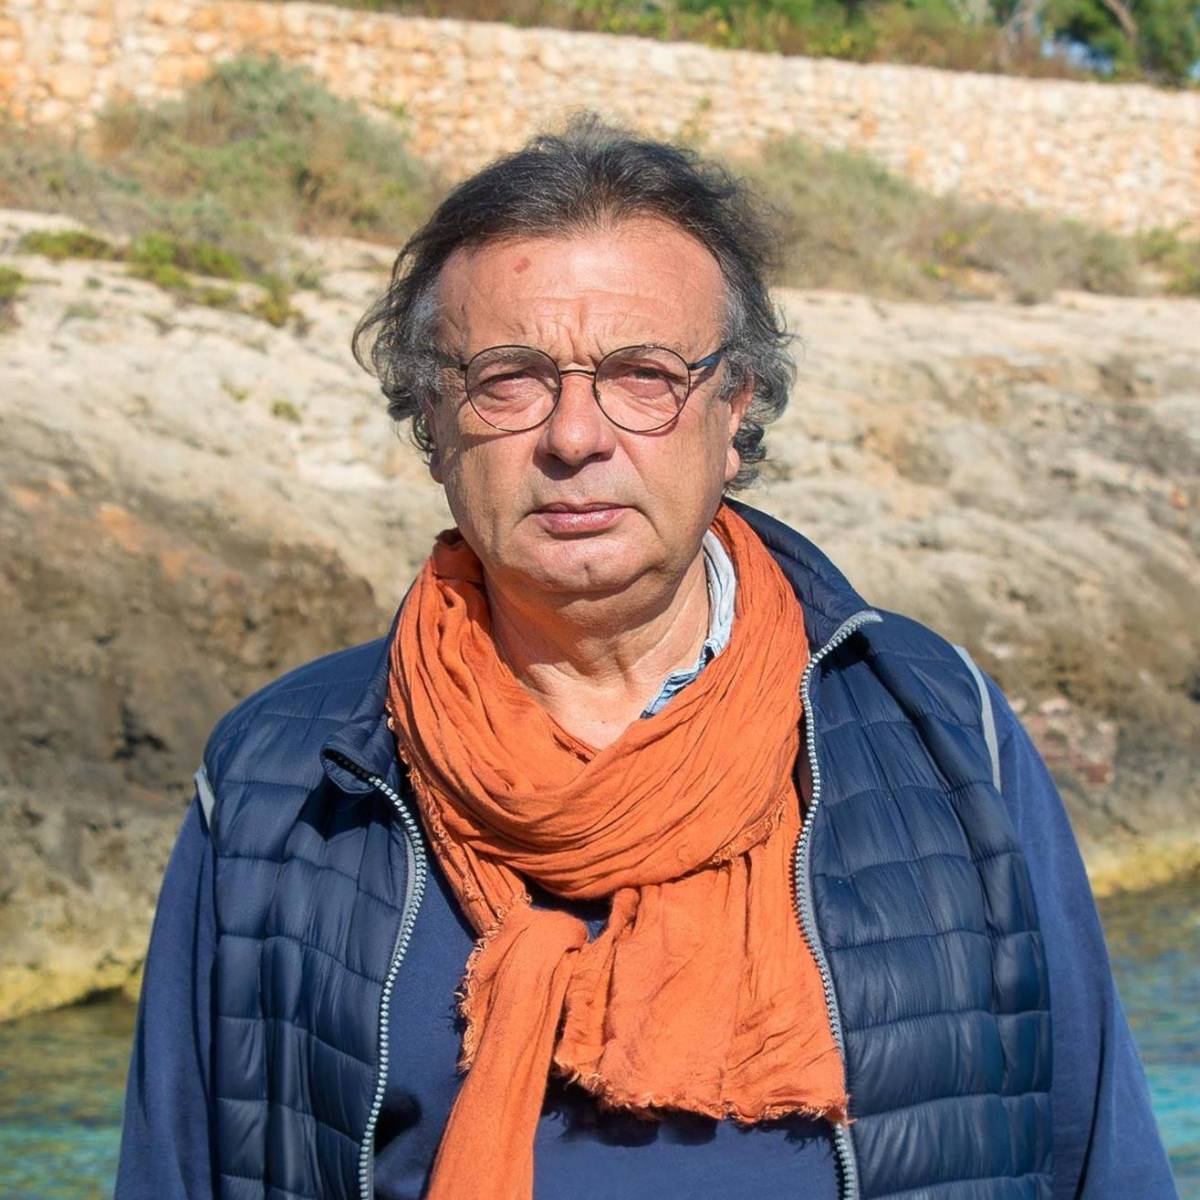 Il sindaco Martello attacca Salvini: "Lui un disastro per Lampedusa"